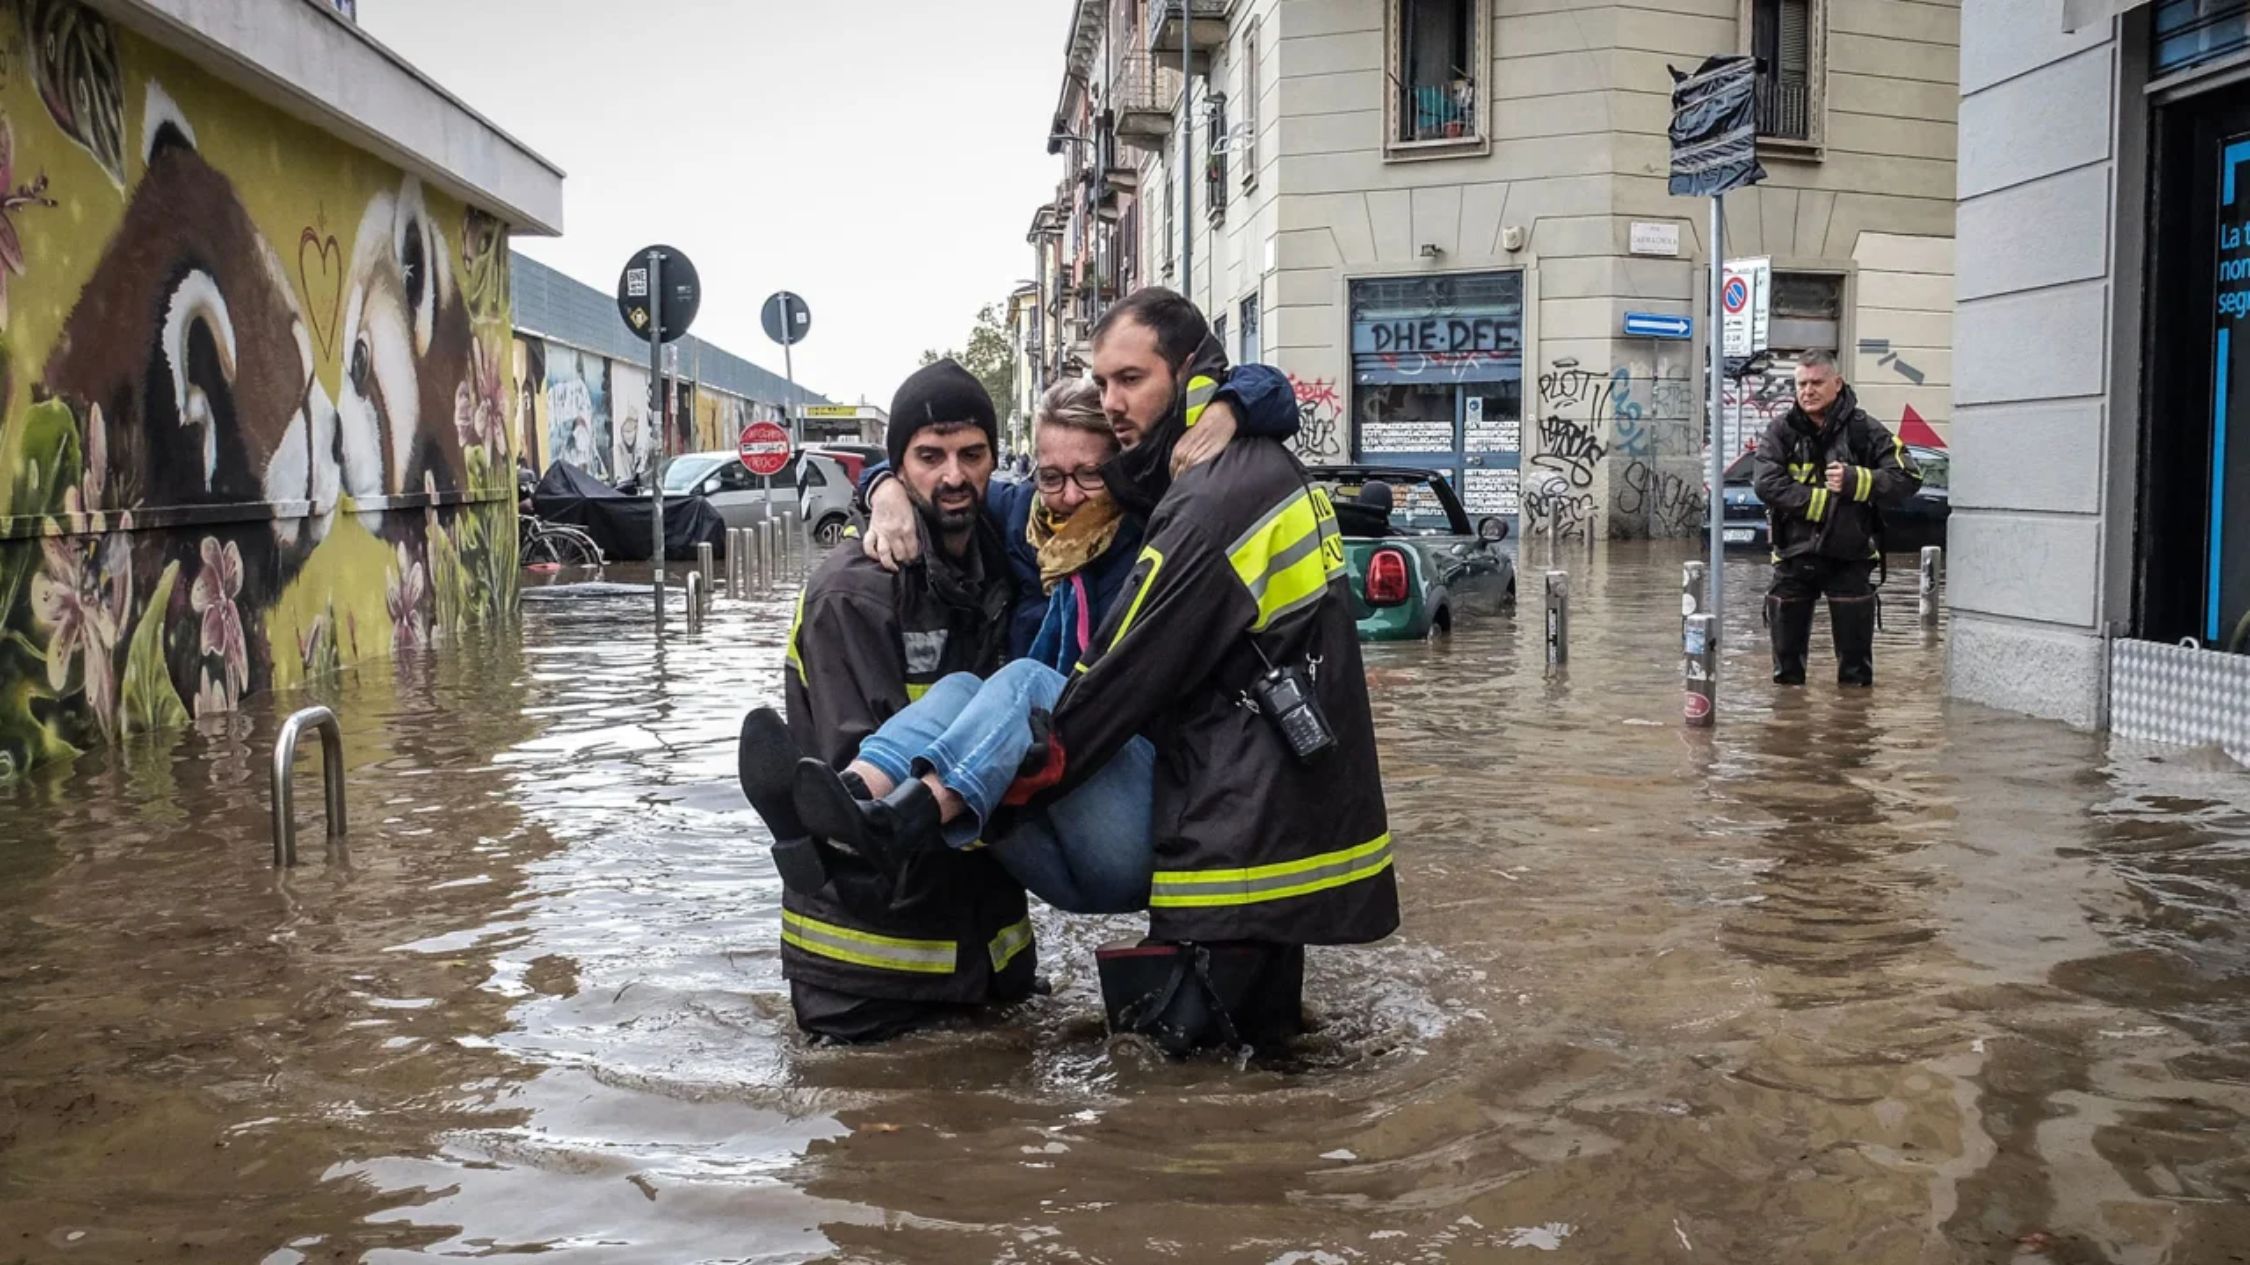 trabajadores de emergencia cargan a una mujer después de que una tormenta provocara el desbordamiento del río Seveso en Milán, Italia, el 31 de octubre de 2023. (Crédito: Matteo Rincón/EPA-EFE/Shutterstock)